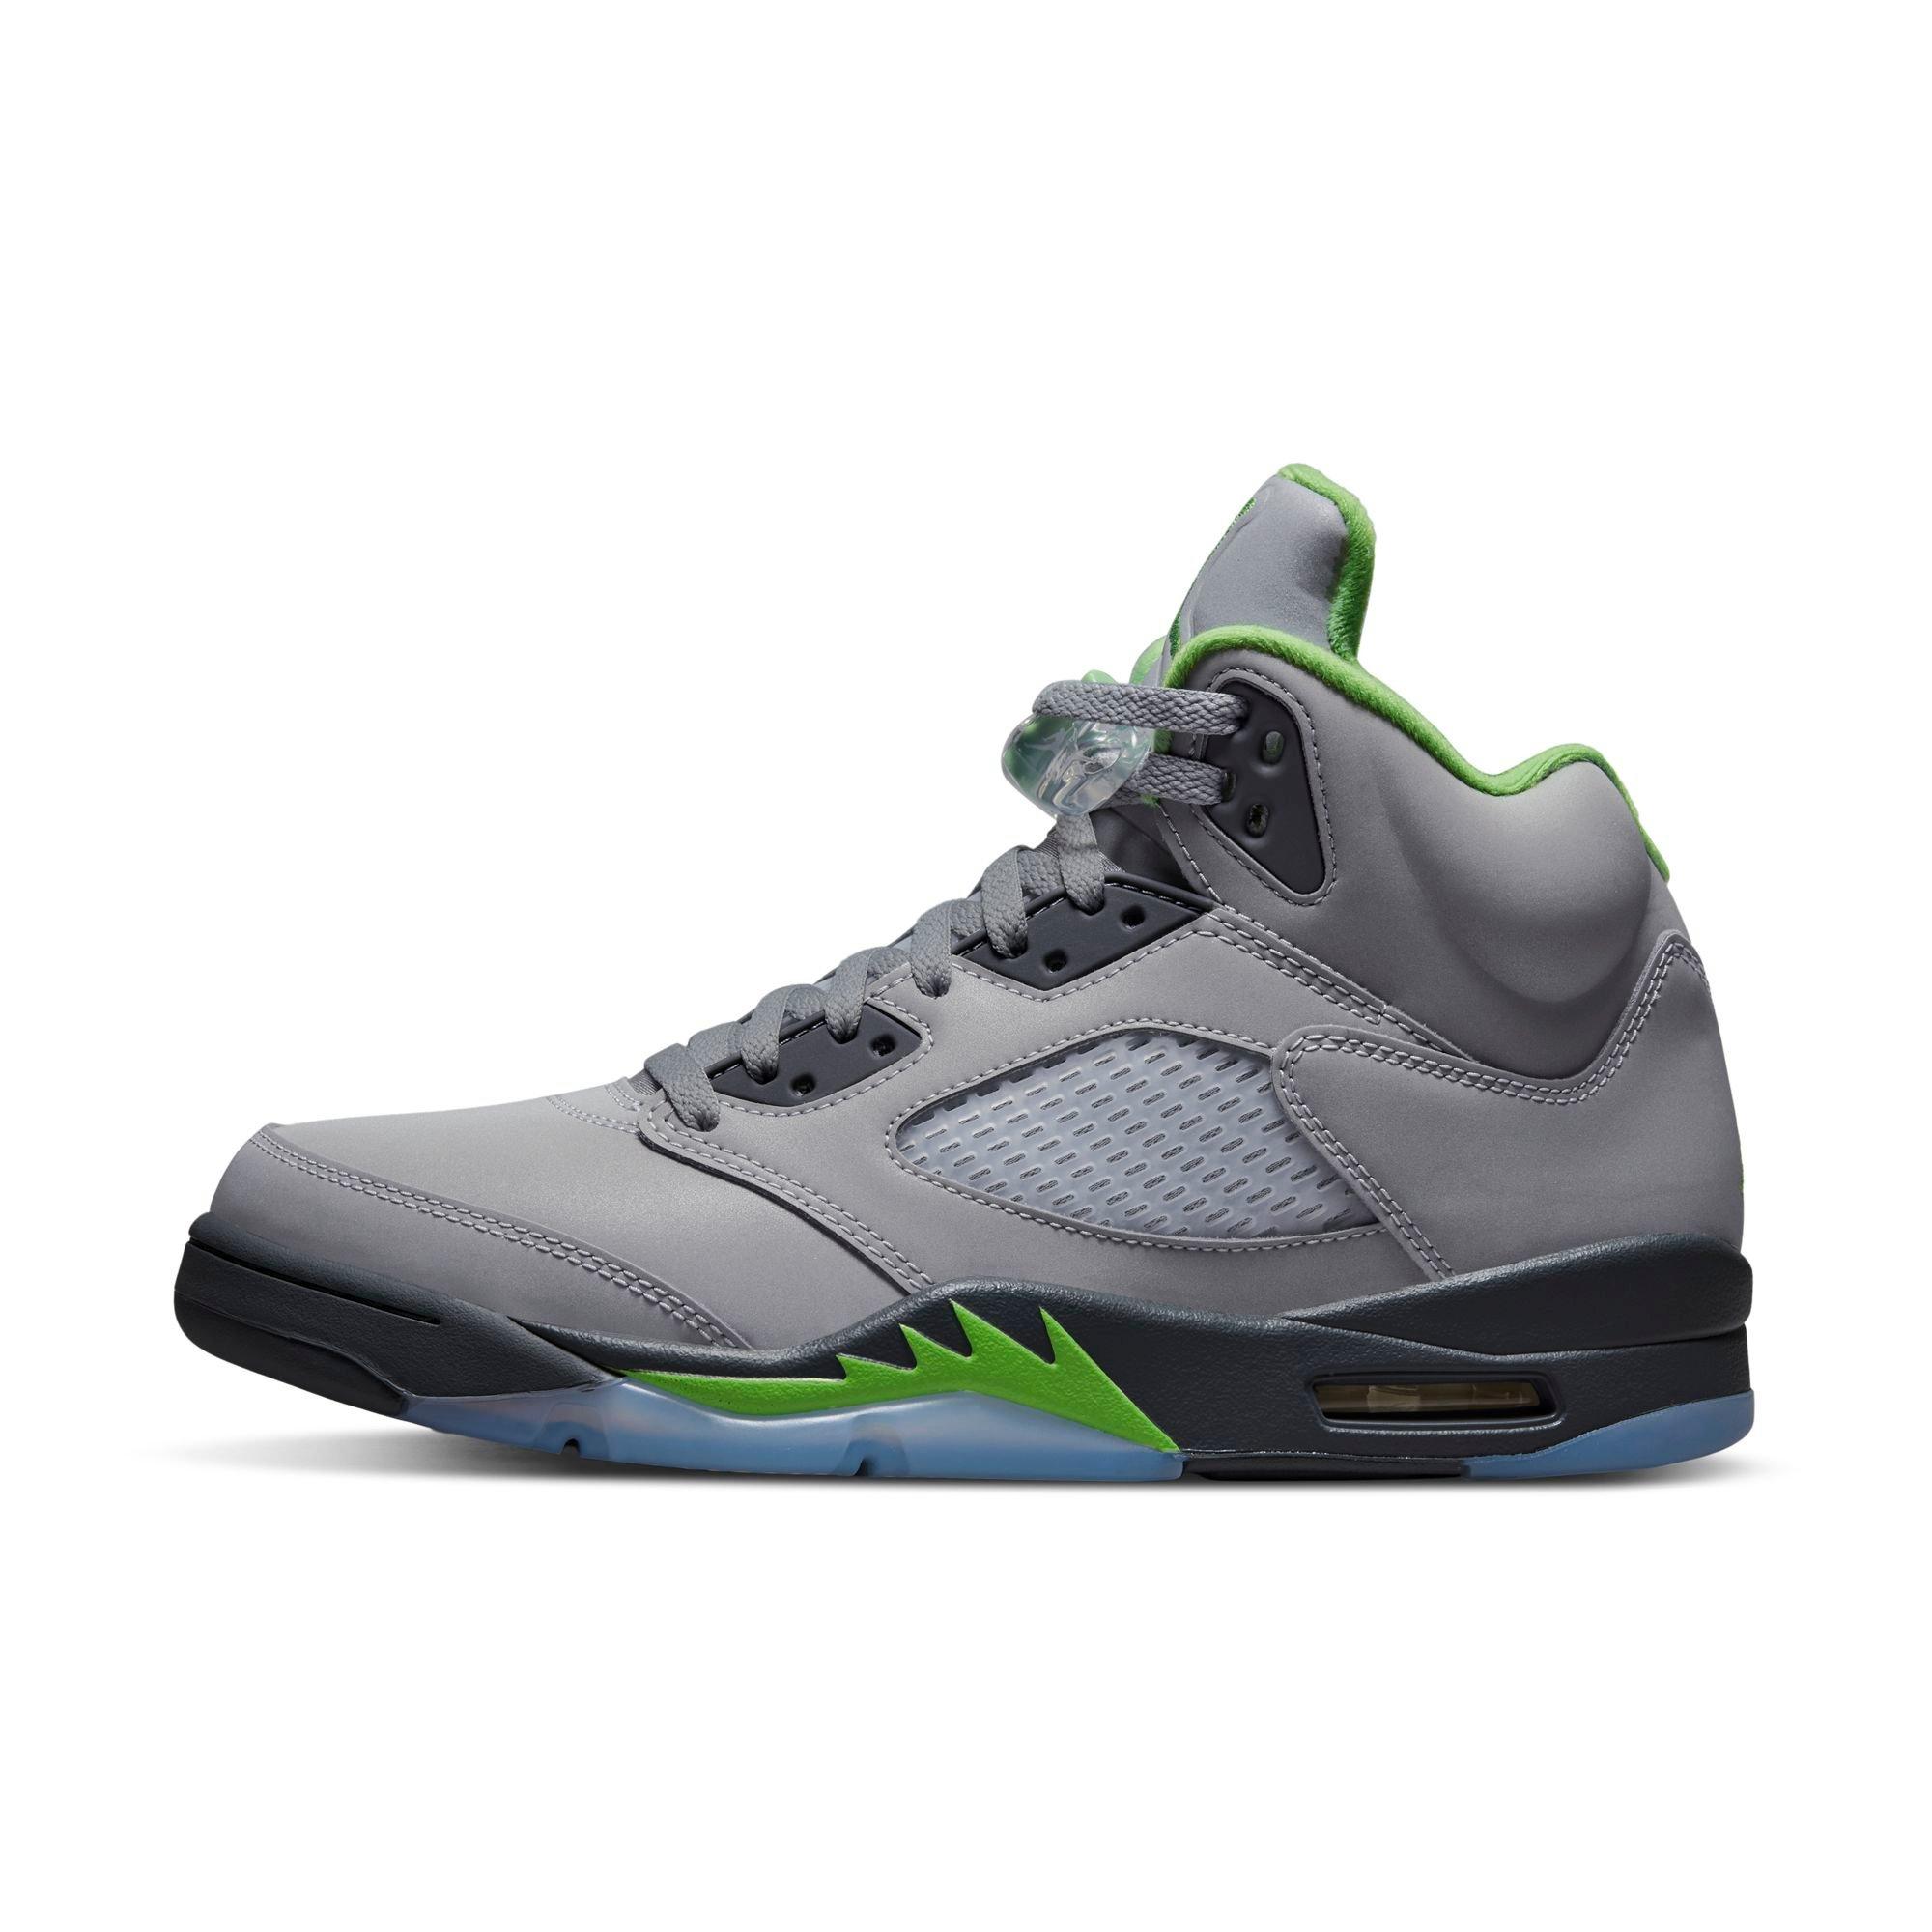 Jordan 5 Retro “Green Bean” Men's Shoe